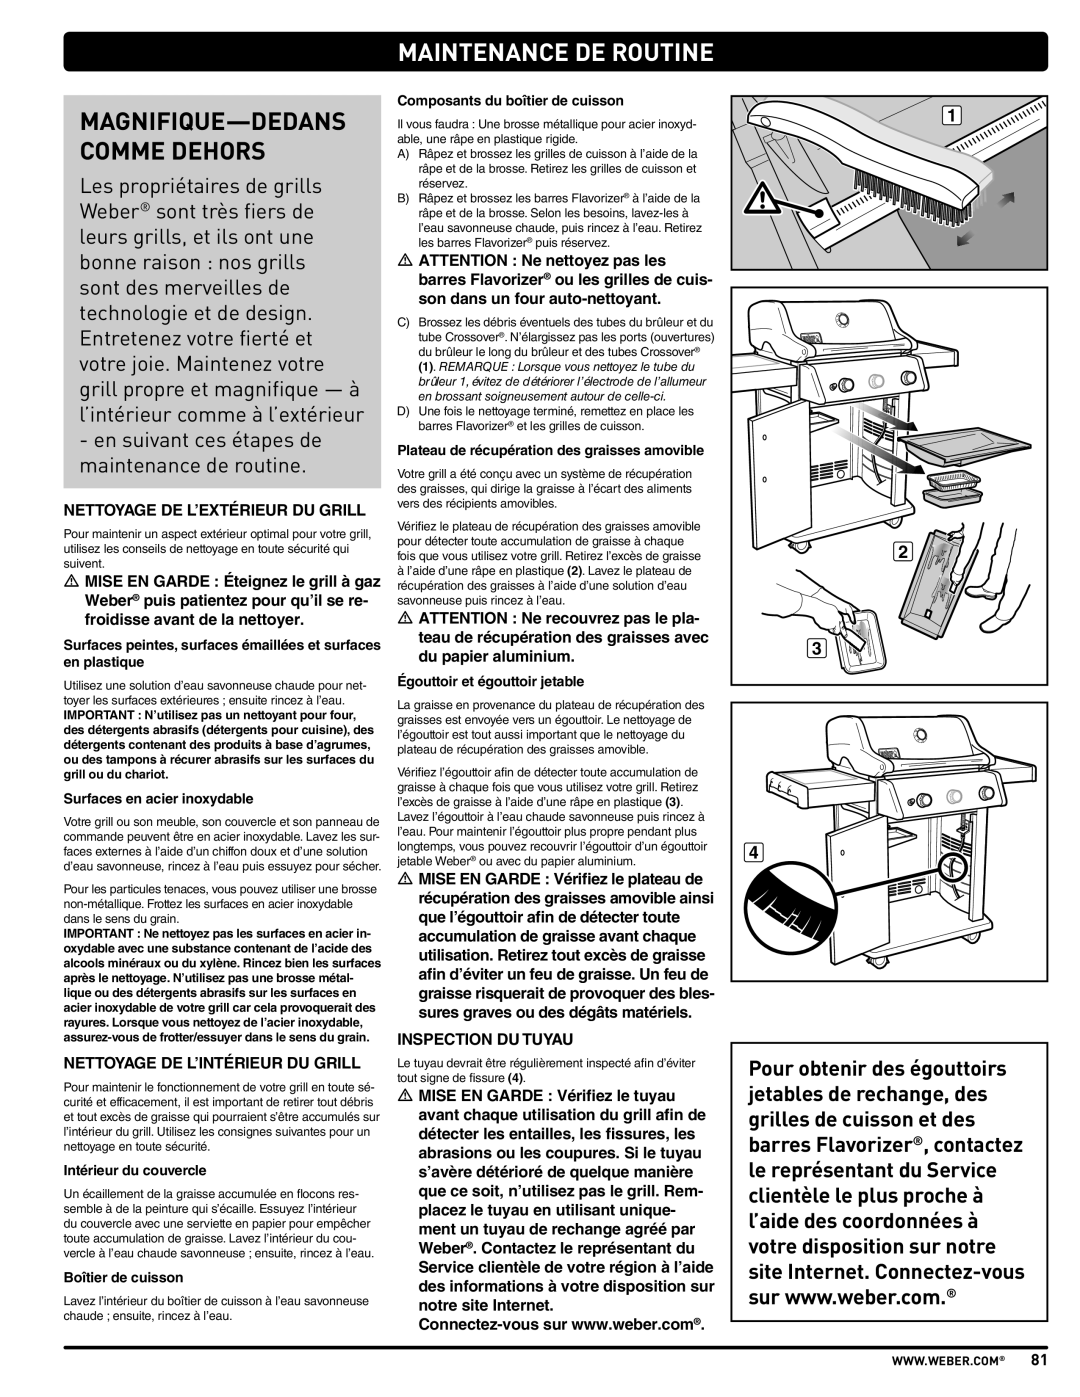 Weber PL - PG. 59 57205 manual Maintenance De Routine, Magnifique-Dedans Comme Dehors 